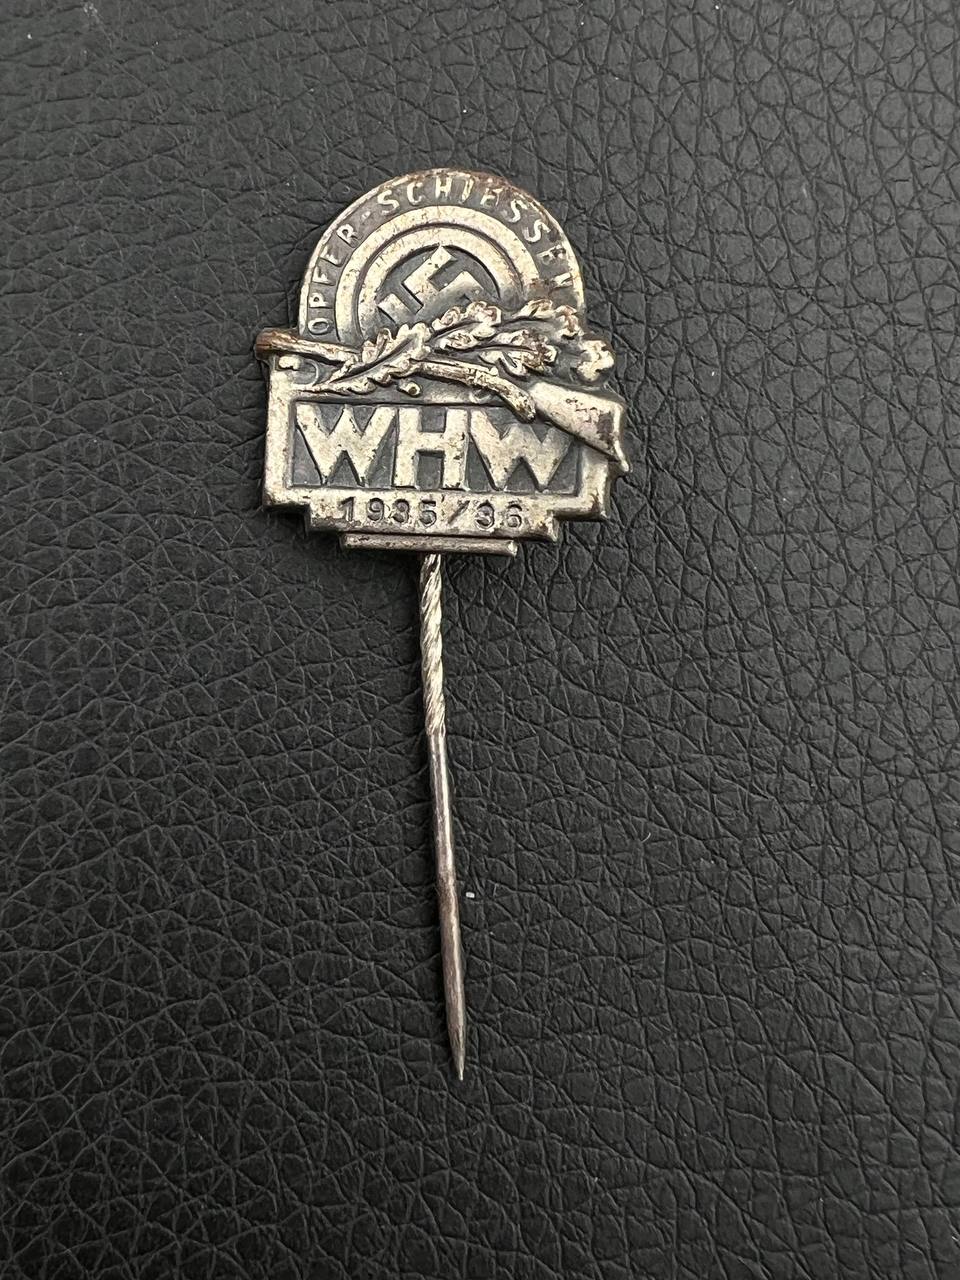 Значок, посвященный стрельбам под эгидой WHW.